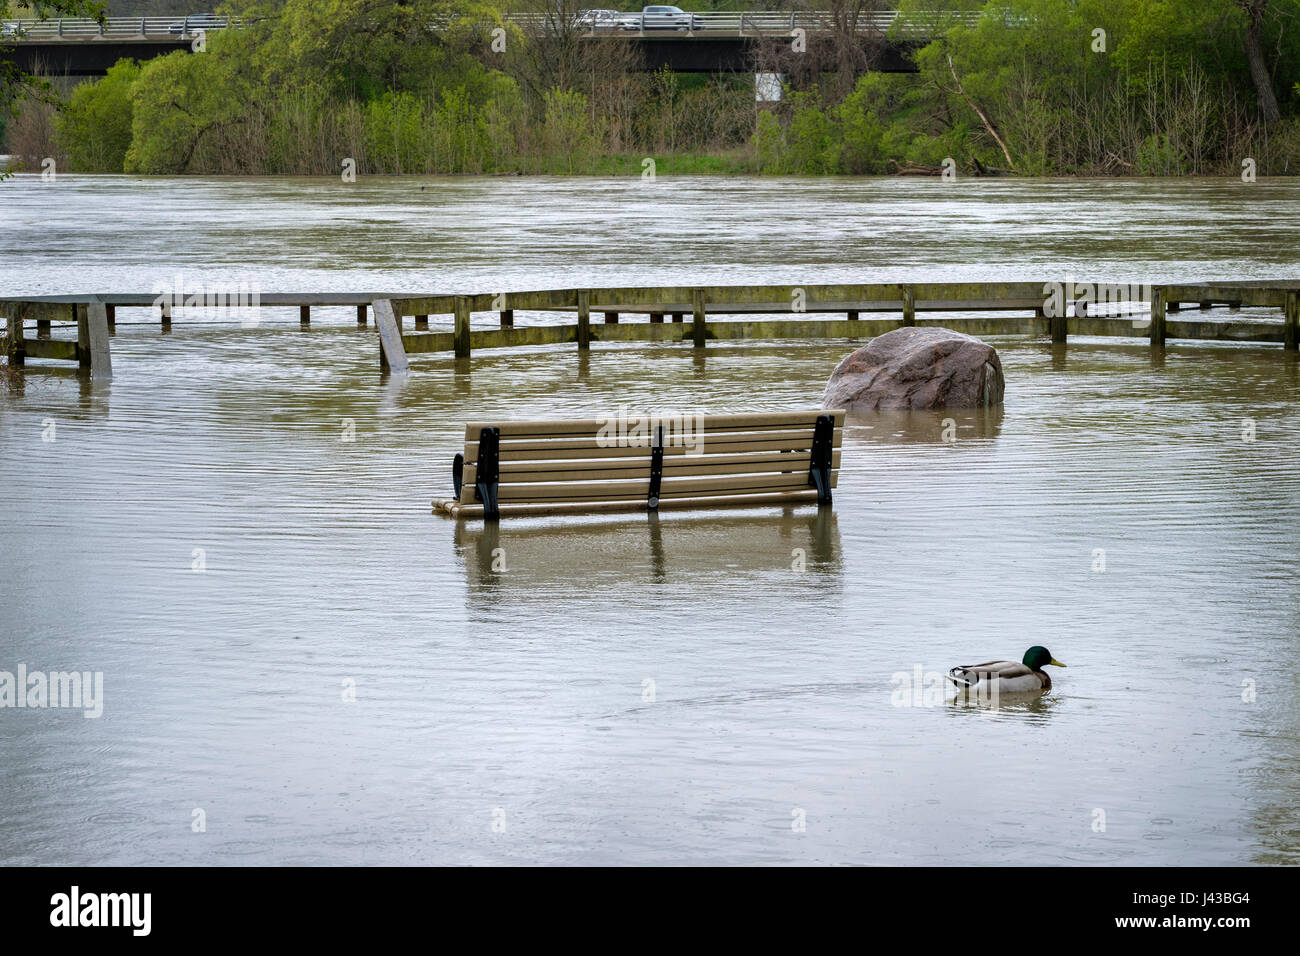 Thames River Überschwemmungen durch heftige Regenfälle im Mai 2017, überfluteten Park, Parkbank, Parkdeck, London, Ontario, Kanada. Stockfoto